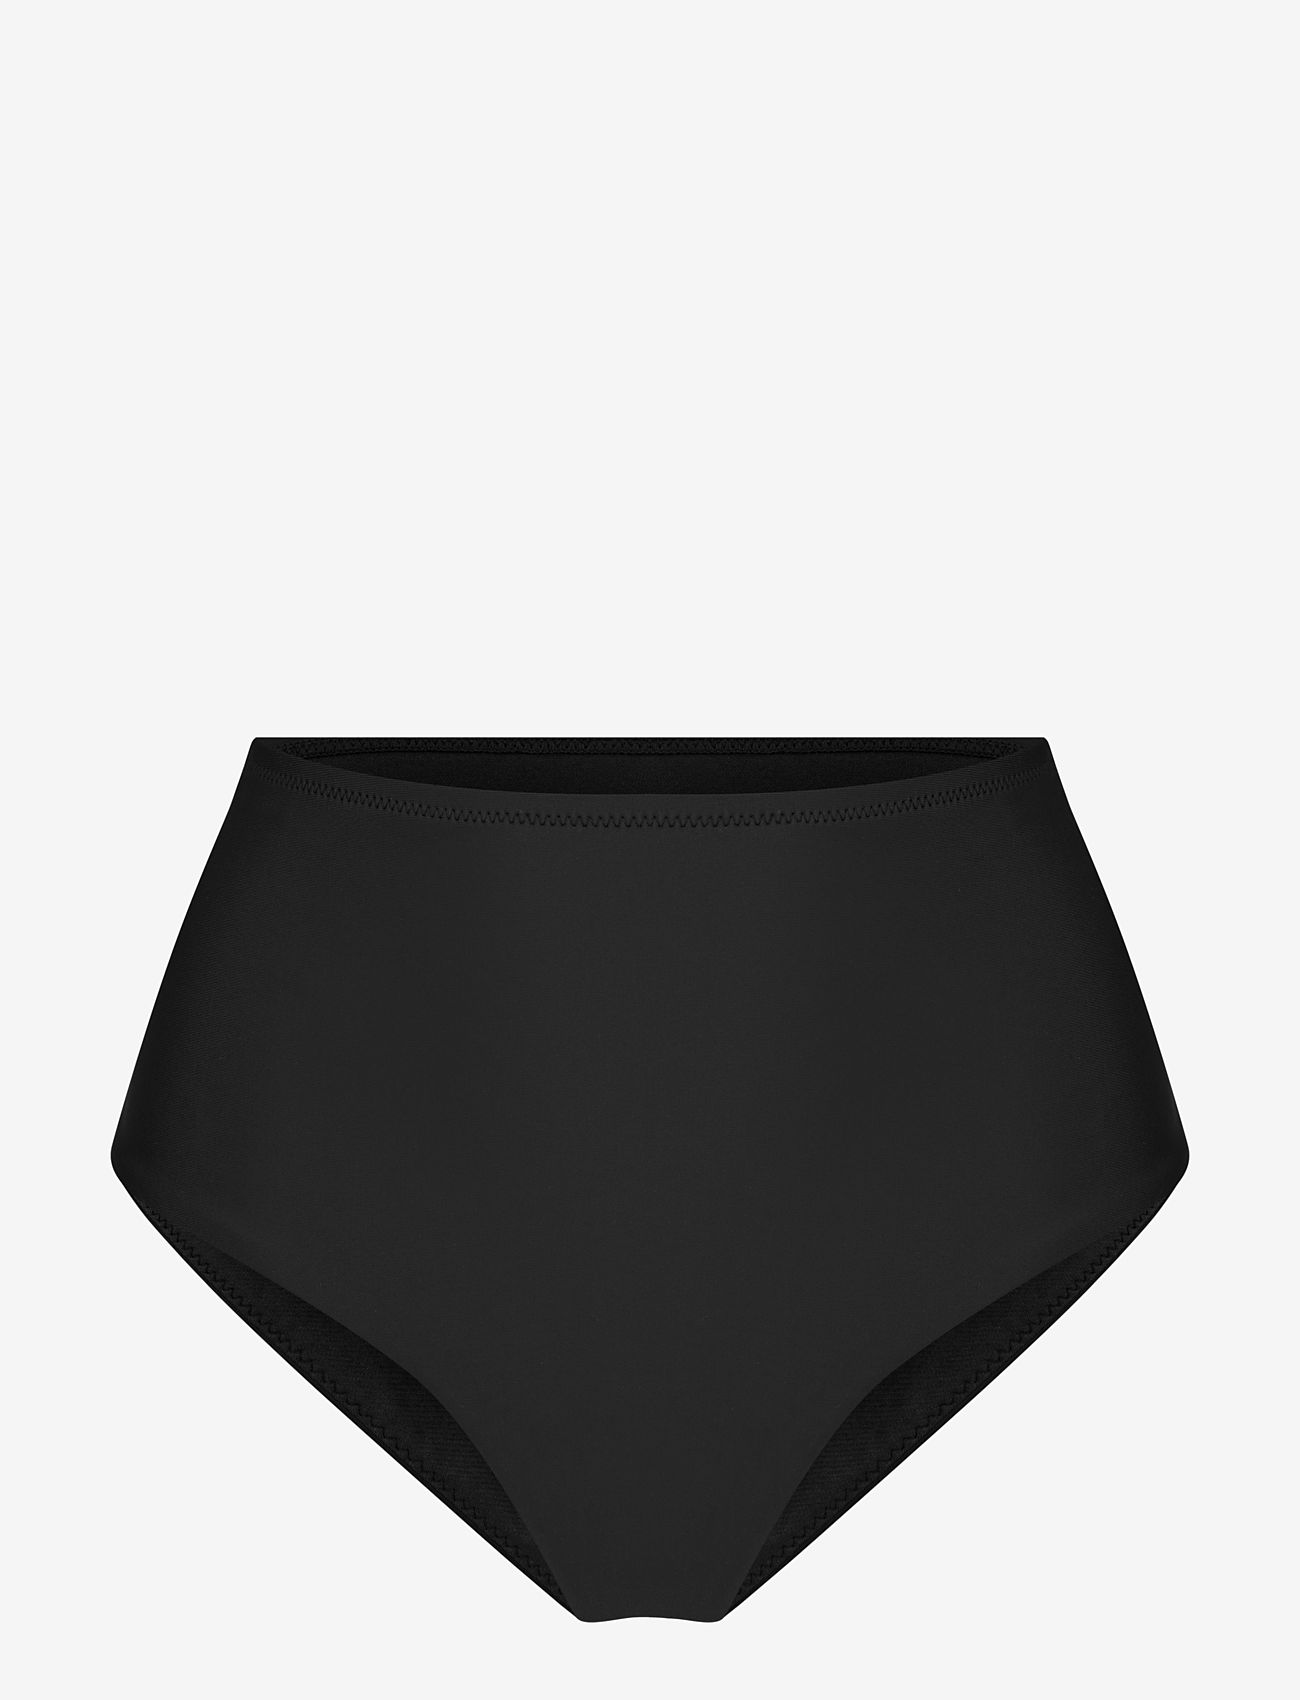 Röhnisch - High Waist Brief - bikinihosen mit hoher taille - black - 0